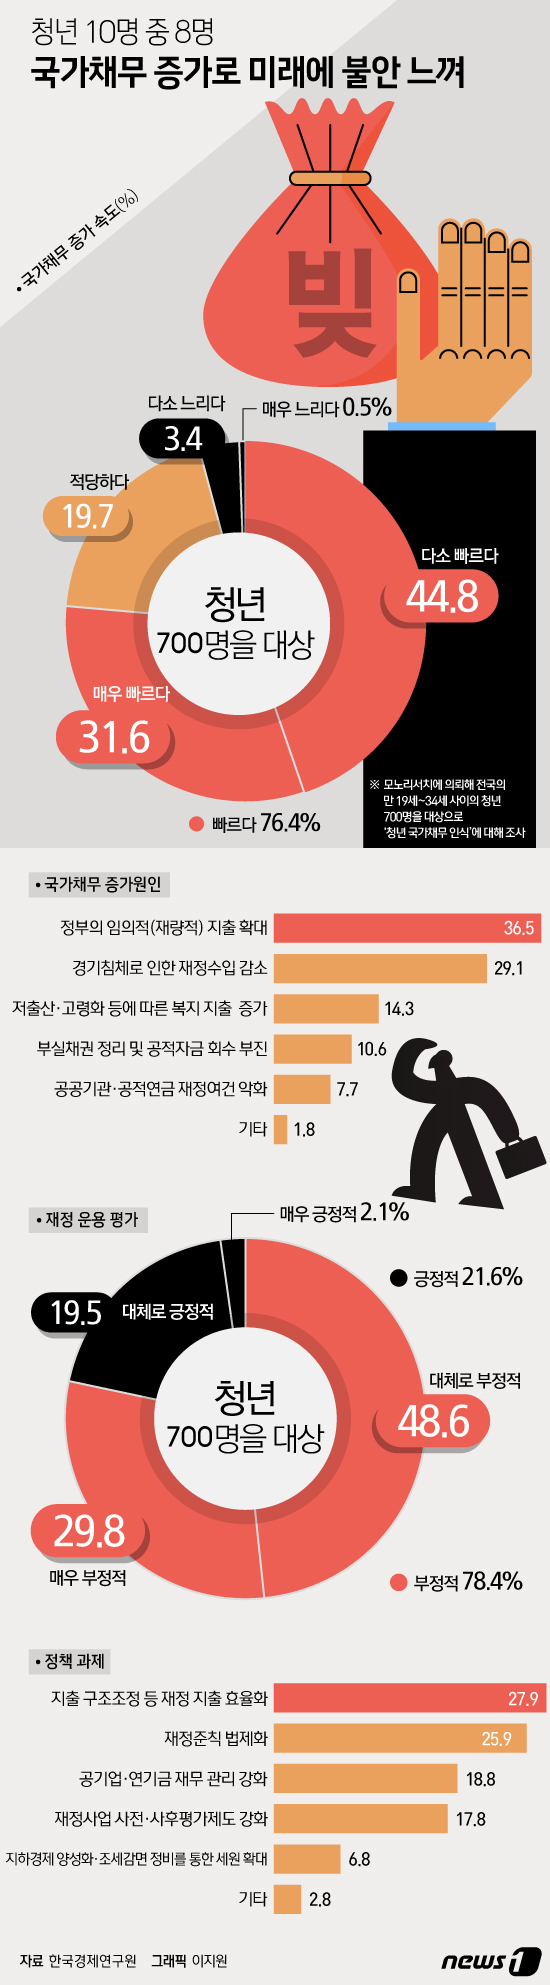 [그래픽뉴스] 청년 80% 국가채무 증가로 미래에 불안 느껴